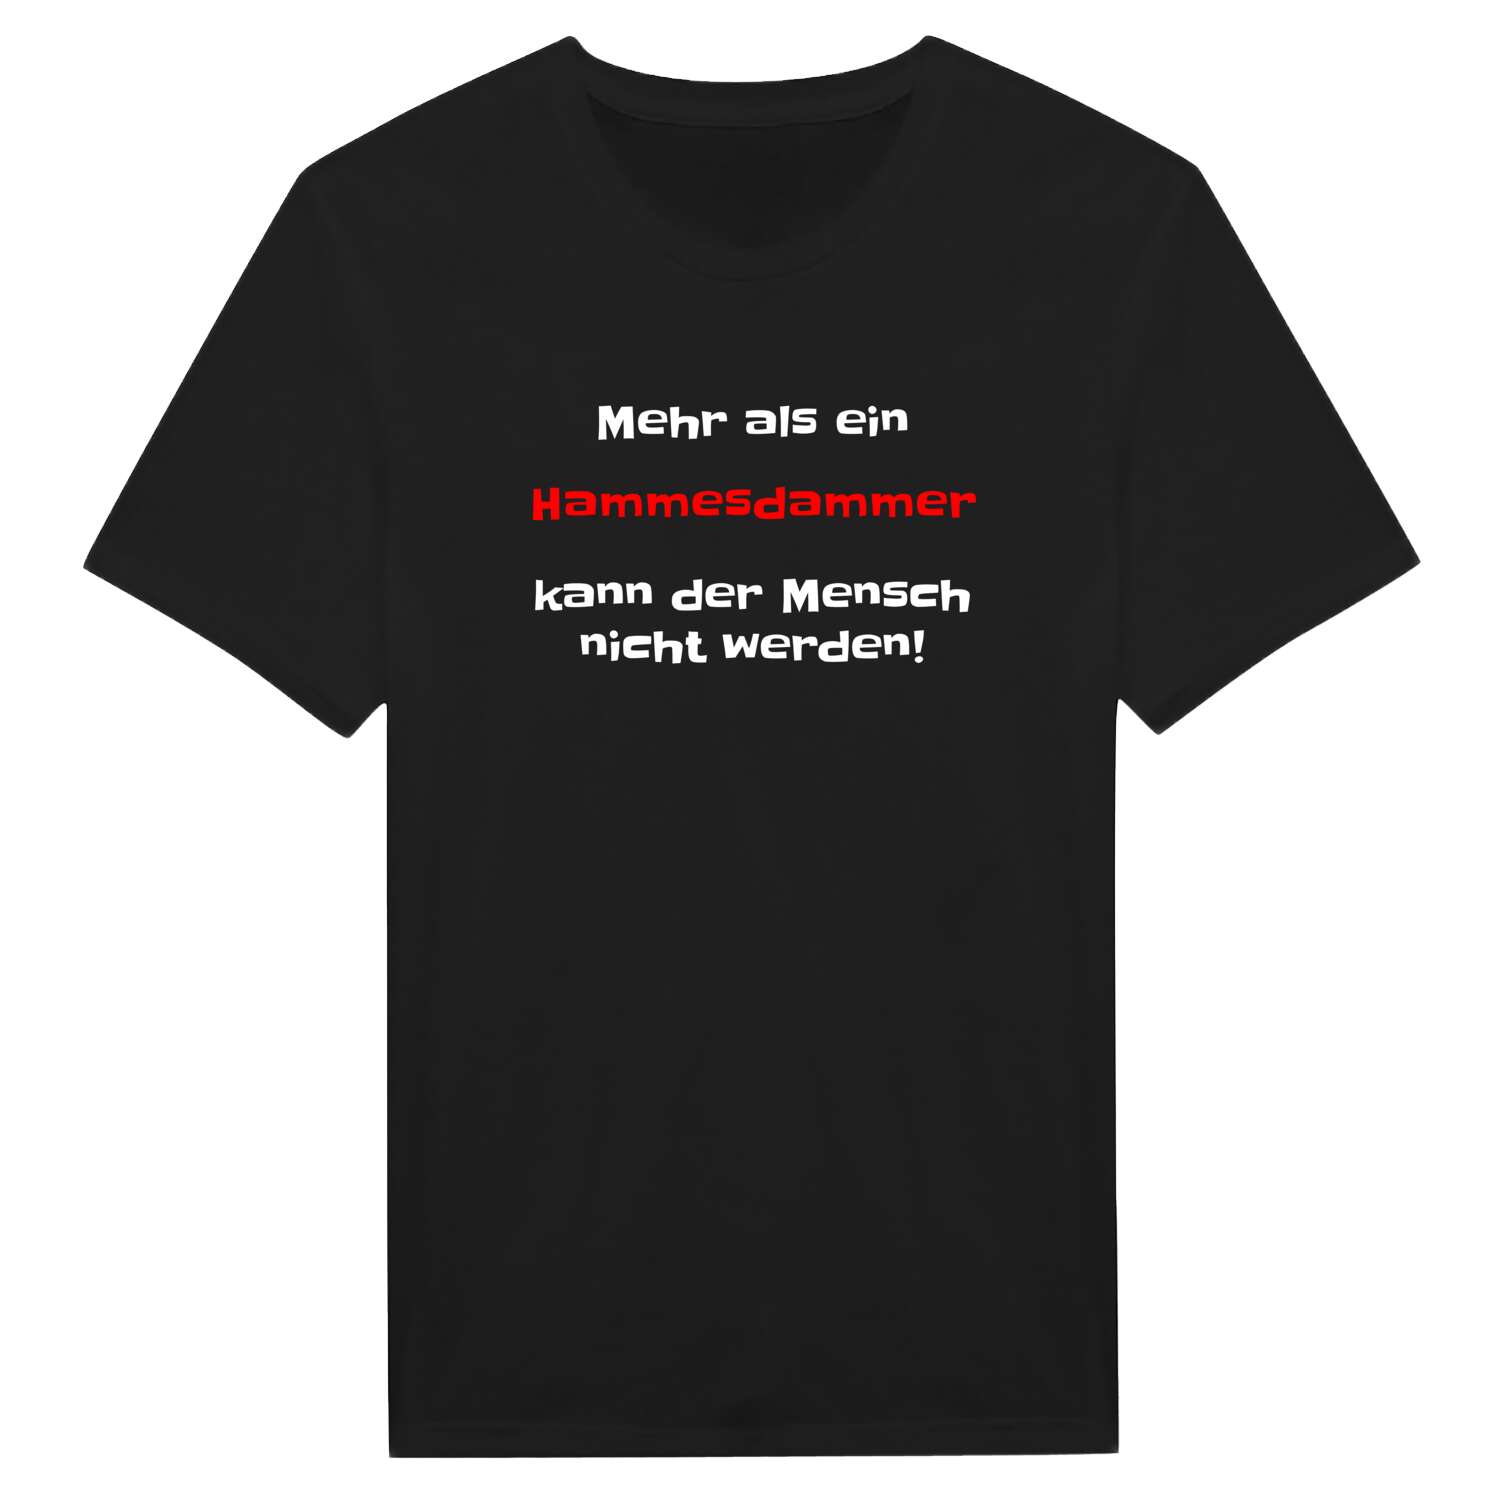 Hammesdamm T-Shirt »Mehr als ein«